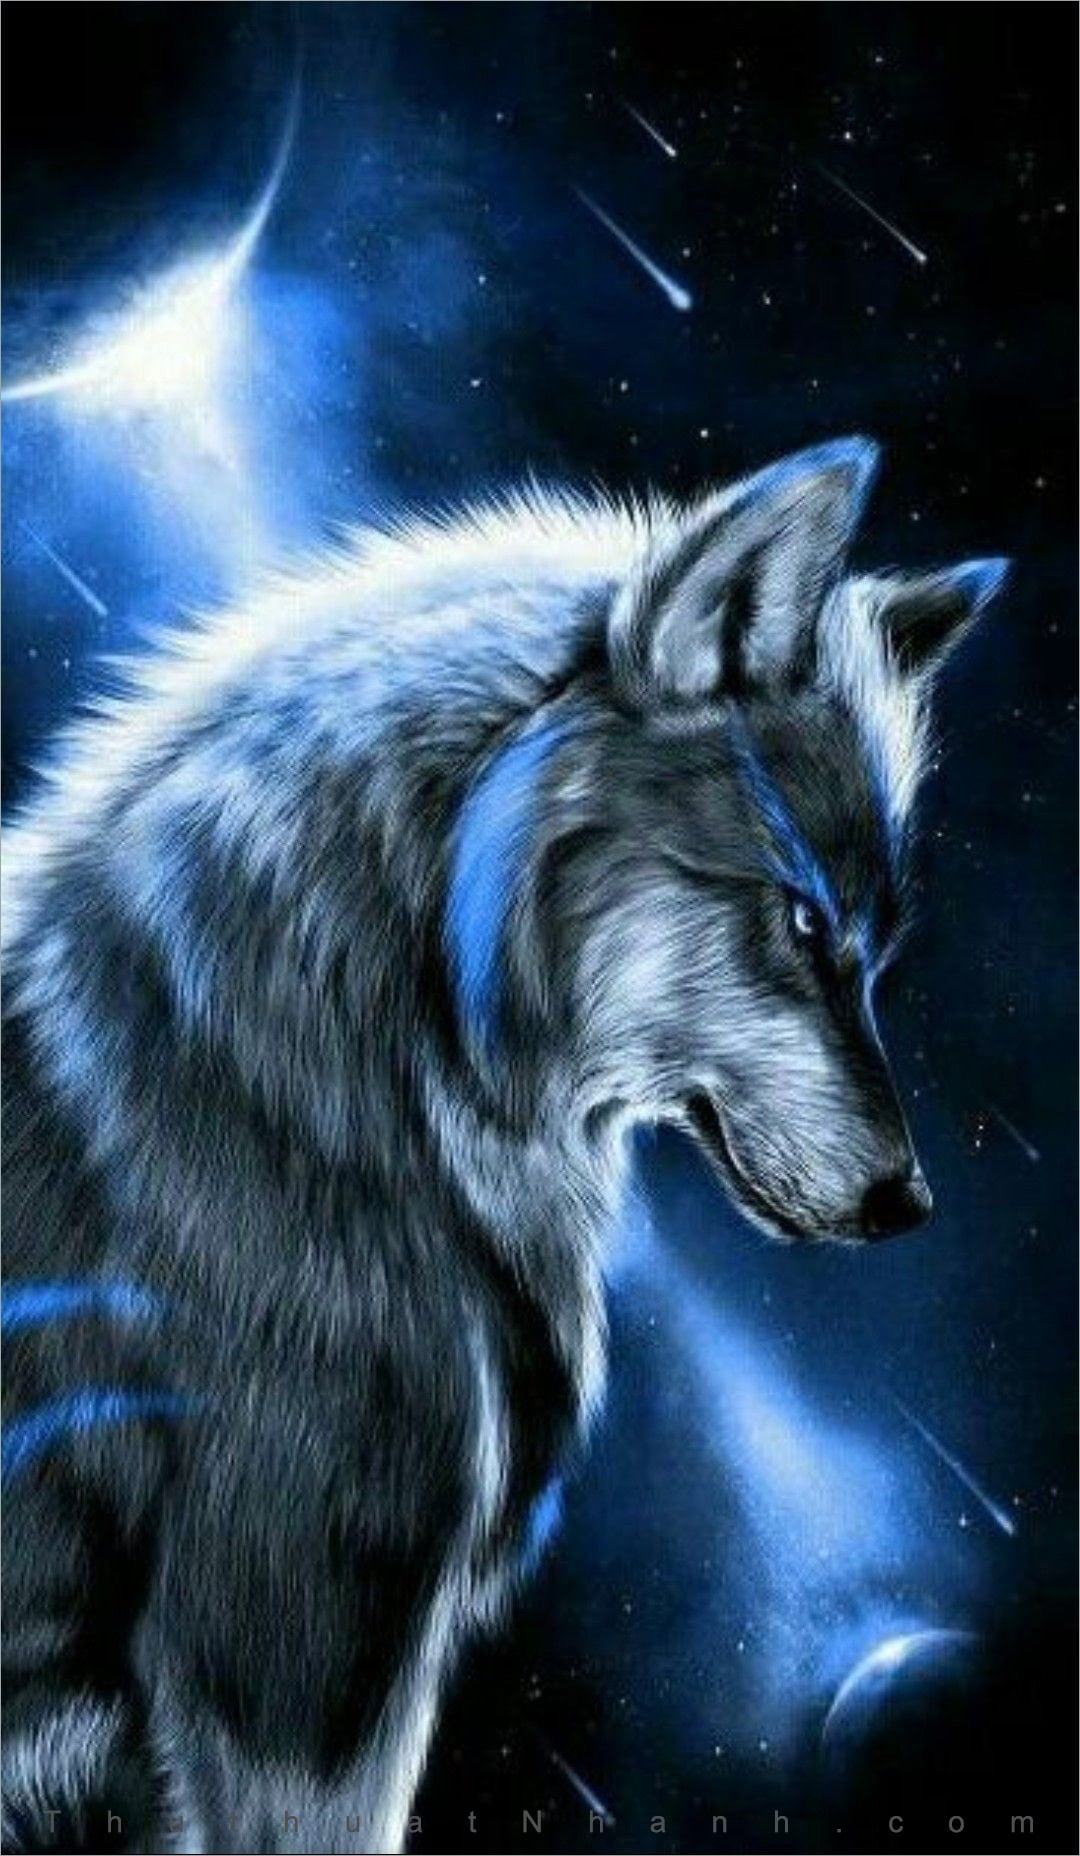 Sự huyền bí và trường tồn của loài sói đã được tái hiện trong hình nền sói đầy đặn. Đây là một lựa chọn tuyệt vời cho những ai yêu thích sự mạnh mẽ, sự tự do và kiên cường.